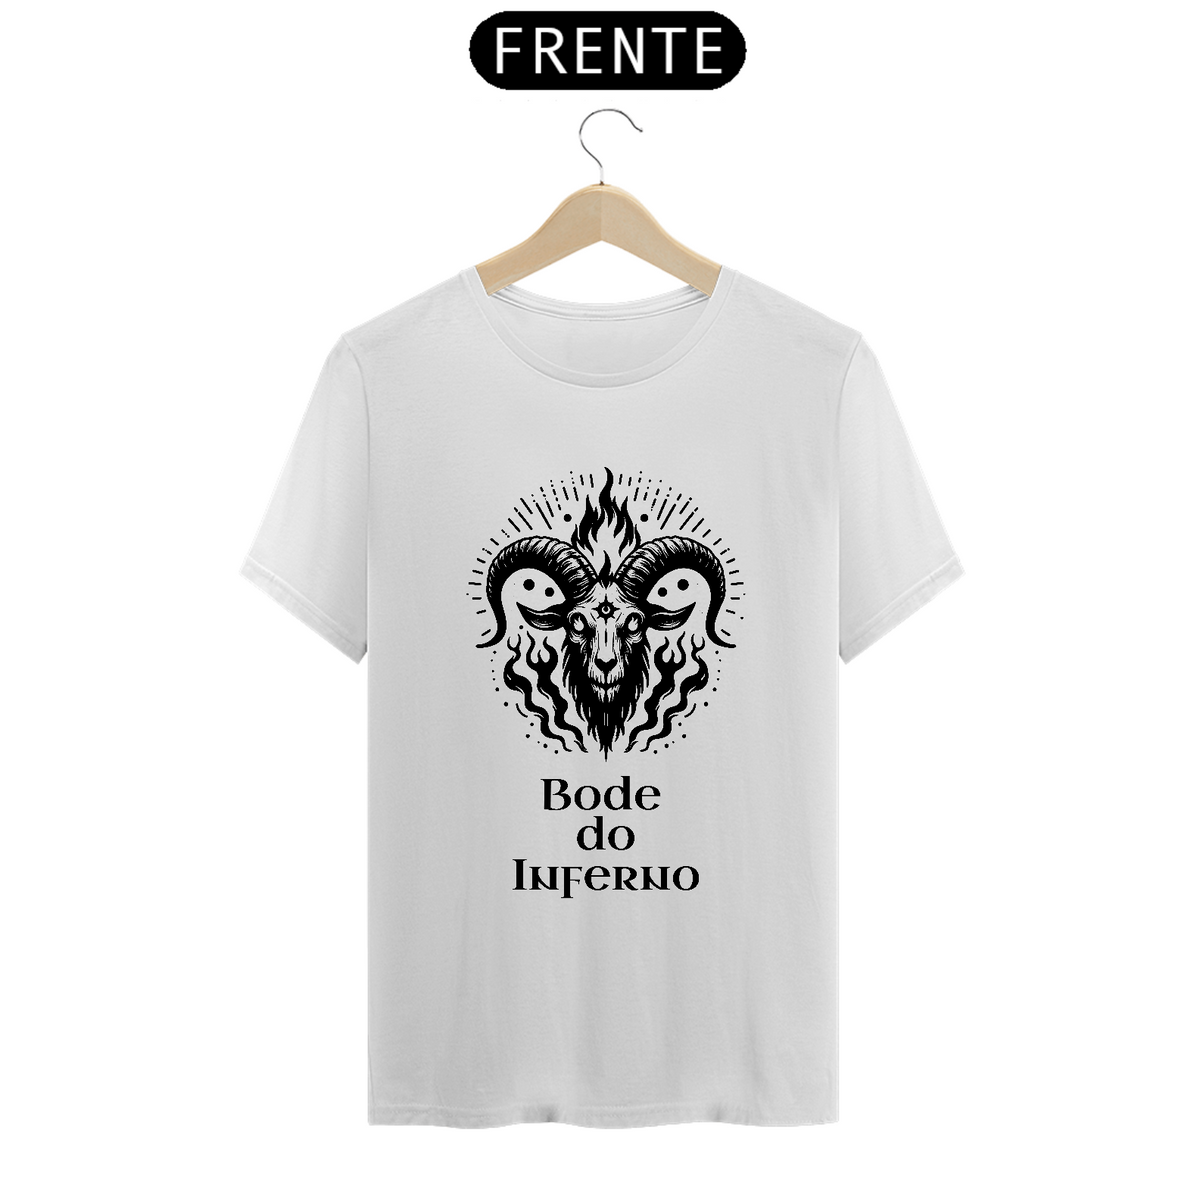 Nome do produto: Camiseta Loja Bode do Inferno com preço promocional